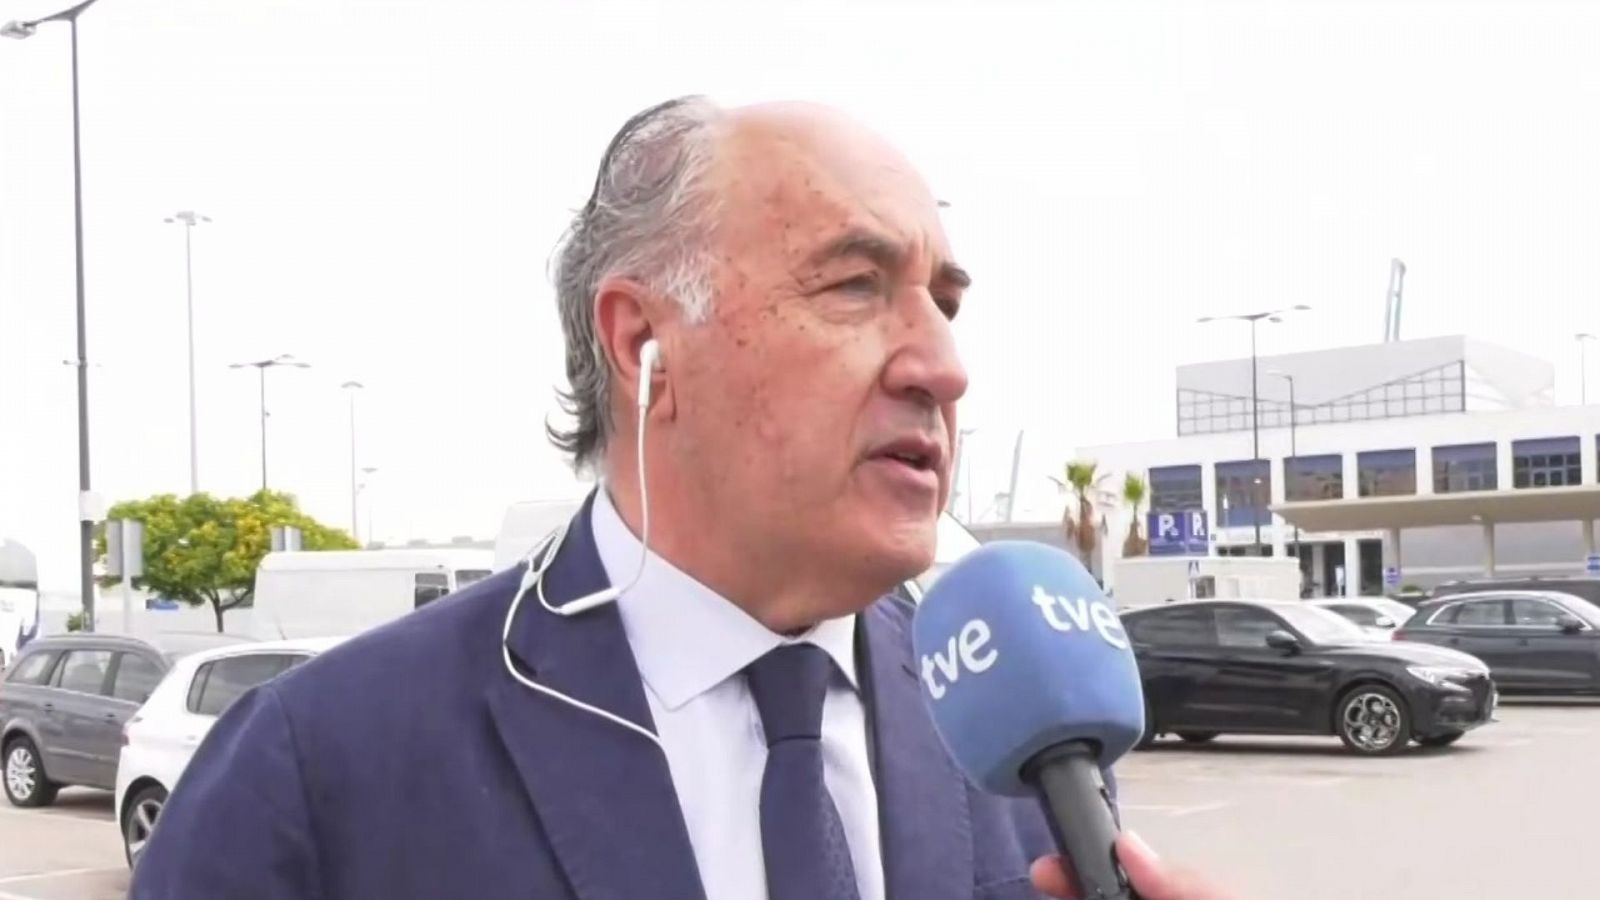 Alcalde de Algeciras: "La Operación Paso del Estrecho va a ser magnífica, modélica" - Ver ahora